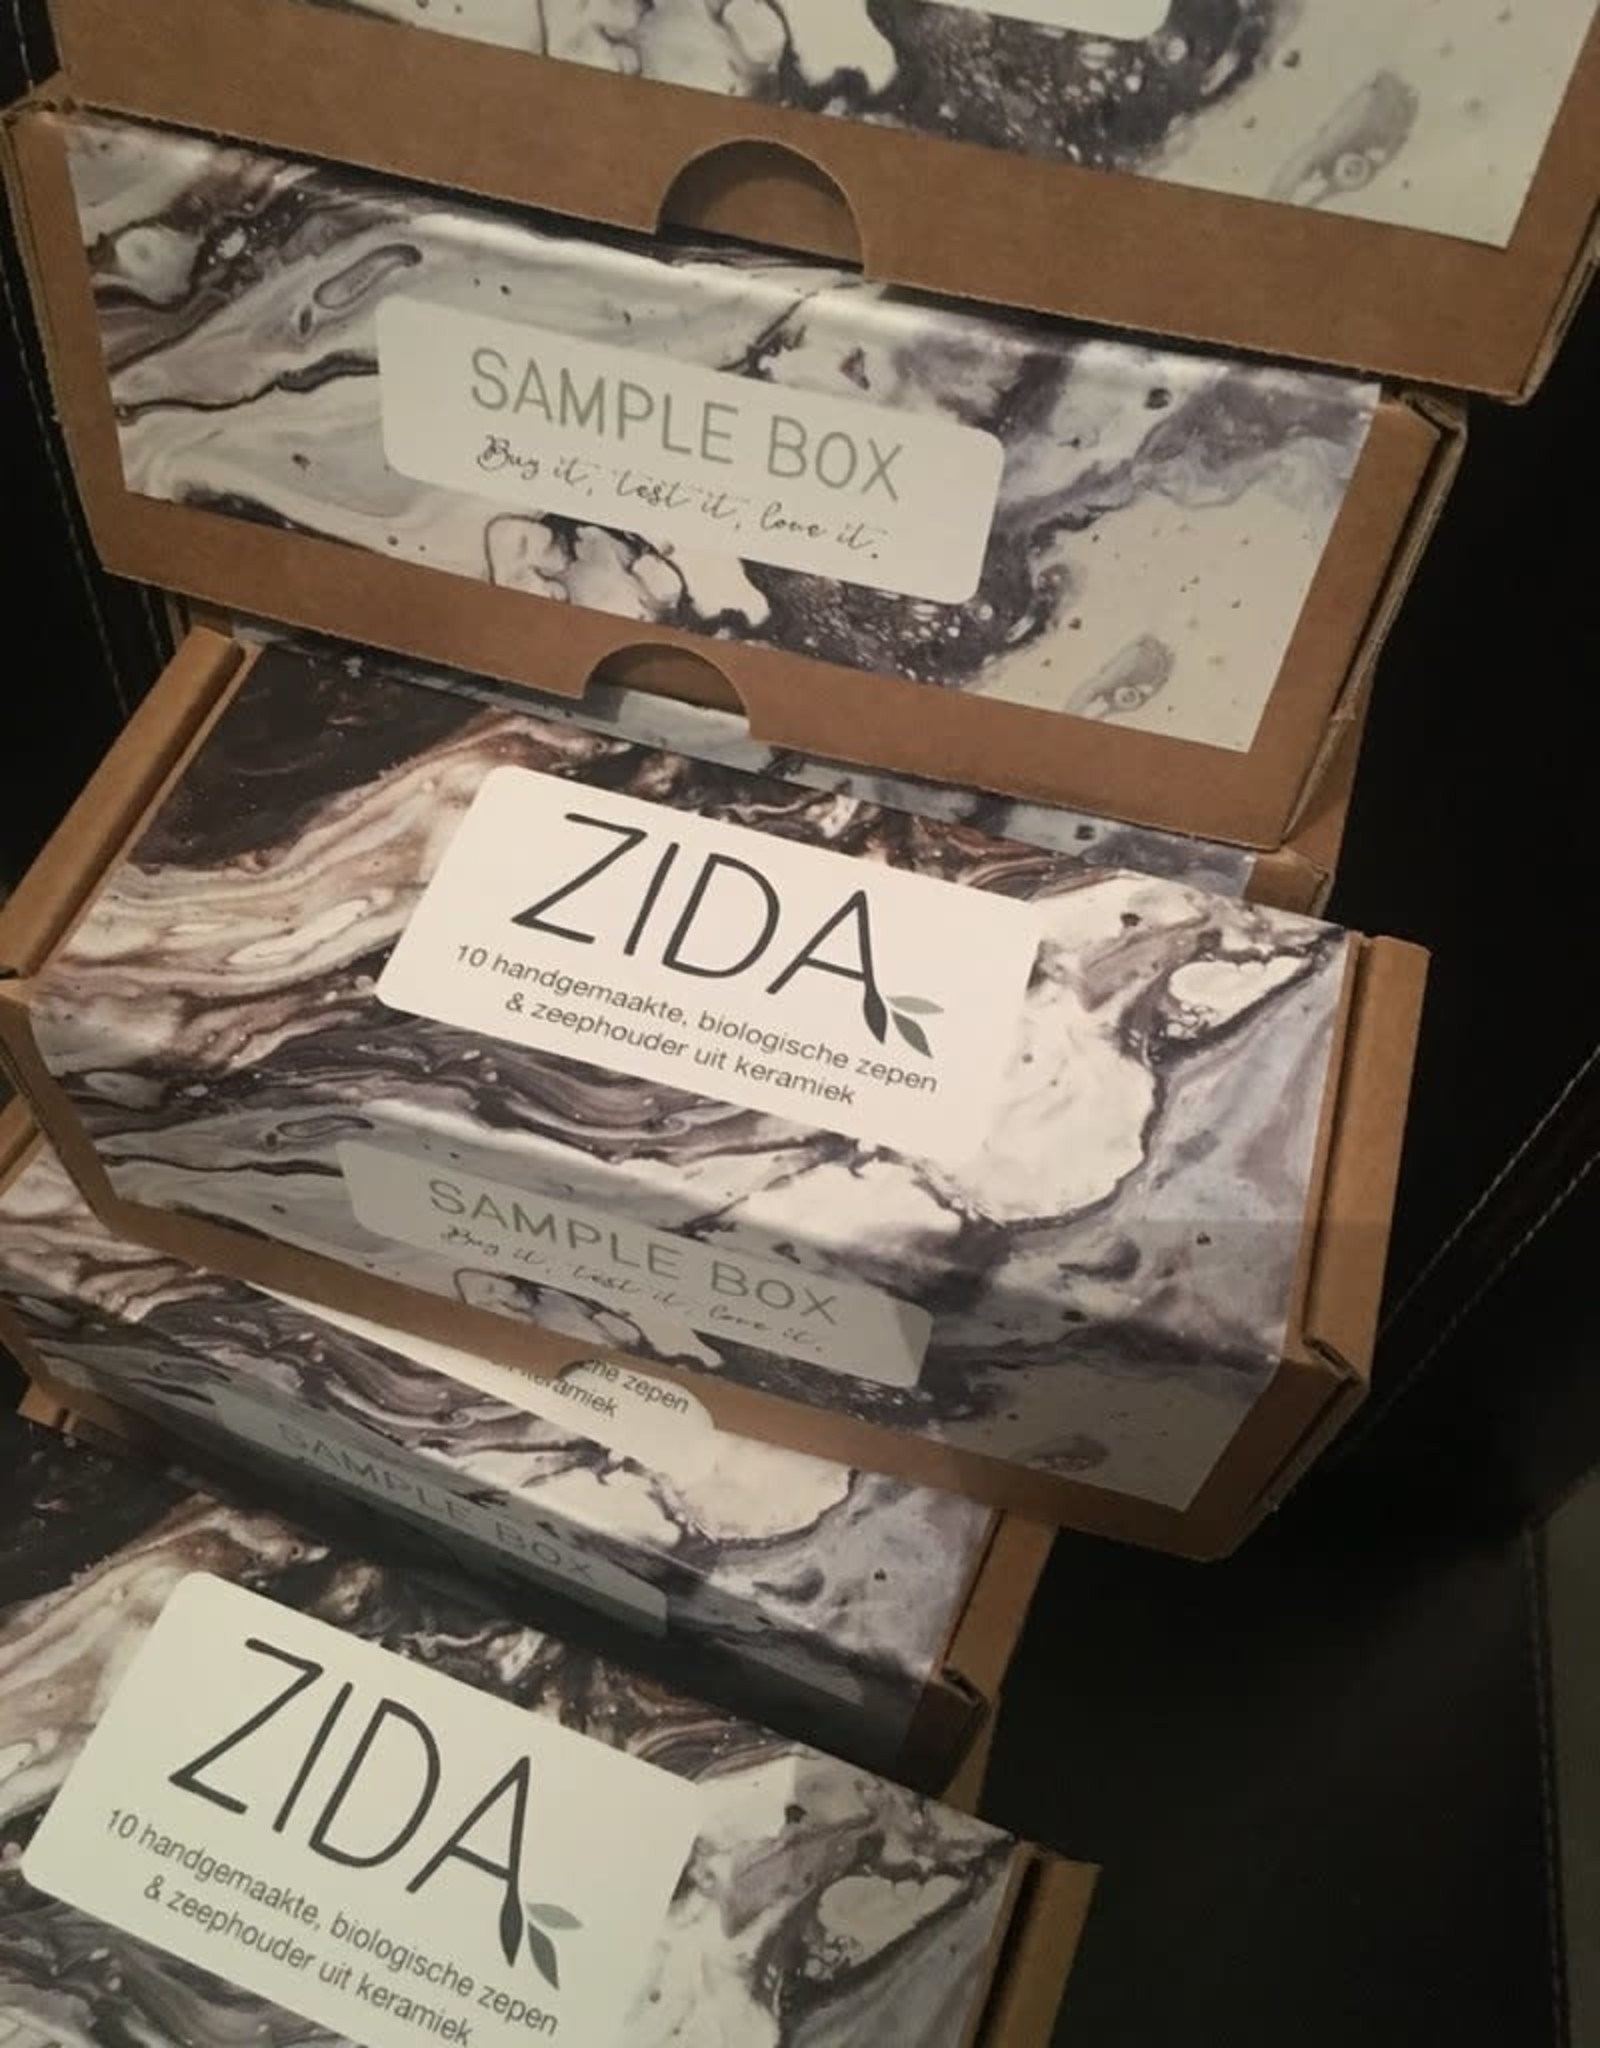 Zida Mix van zepen - Sample Box - zeepjes Zida